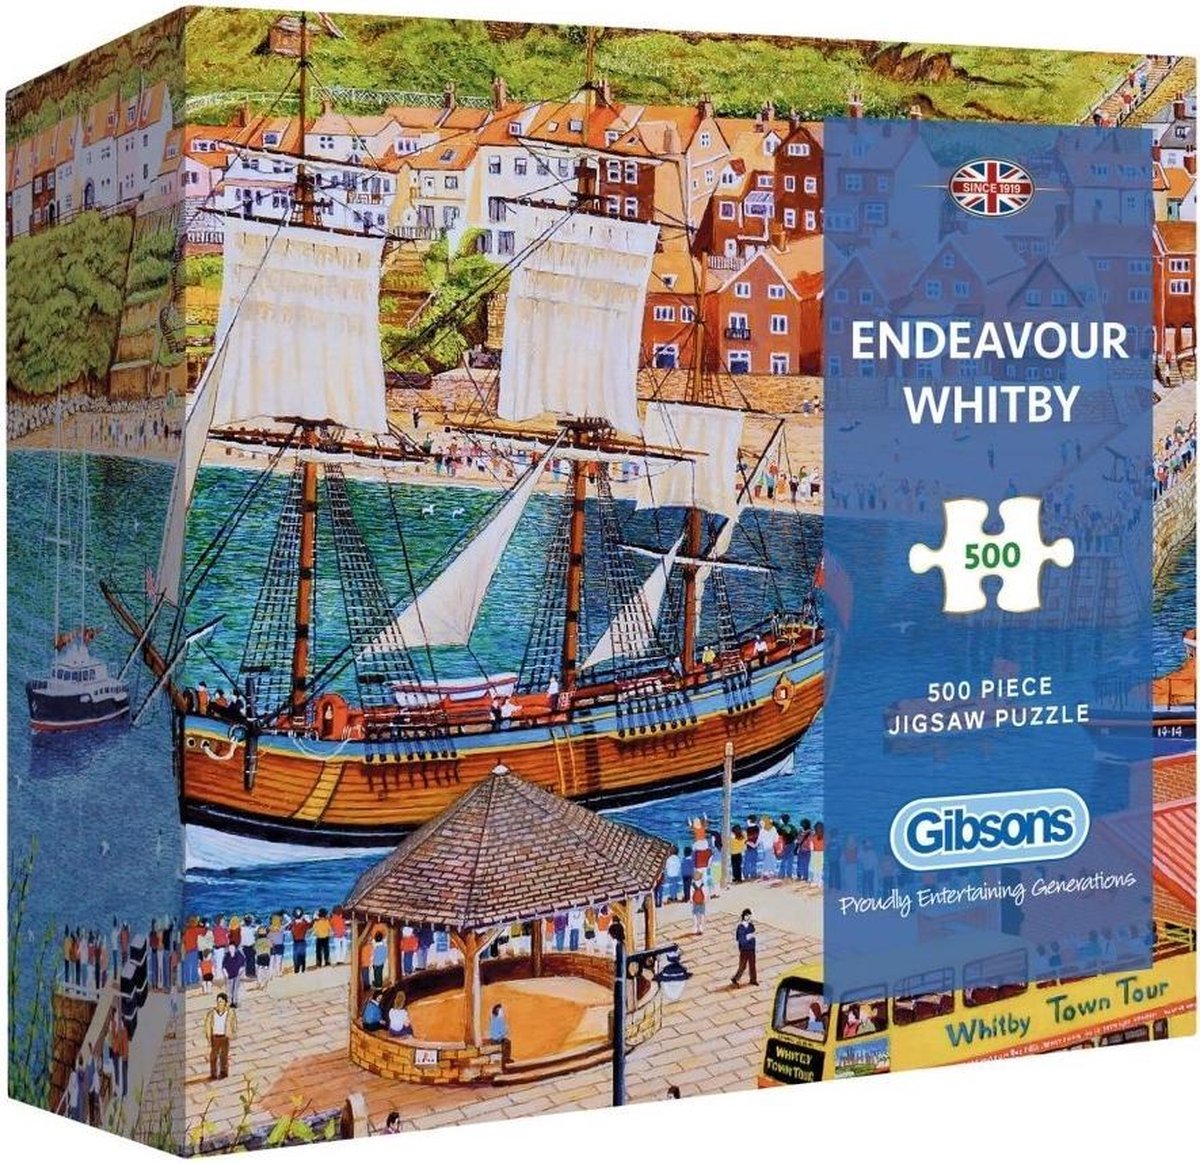 Endeavour Whitby - Gift Box Puzzel (500 stukjes)